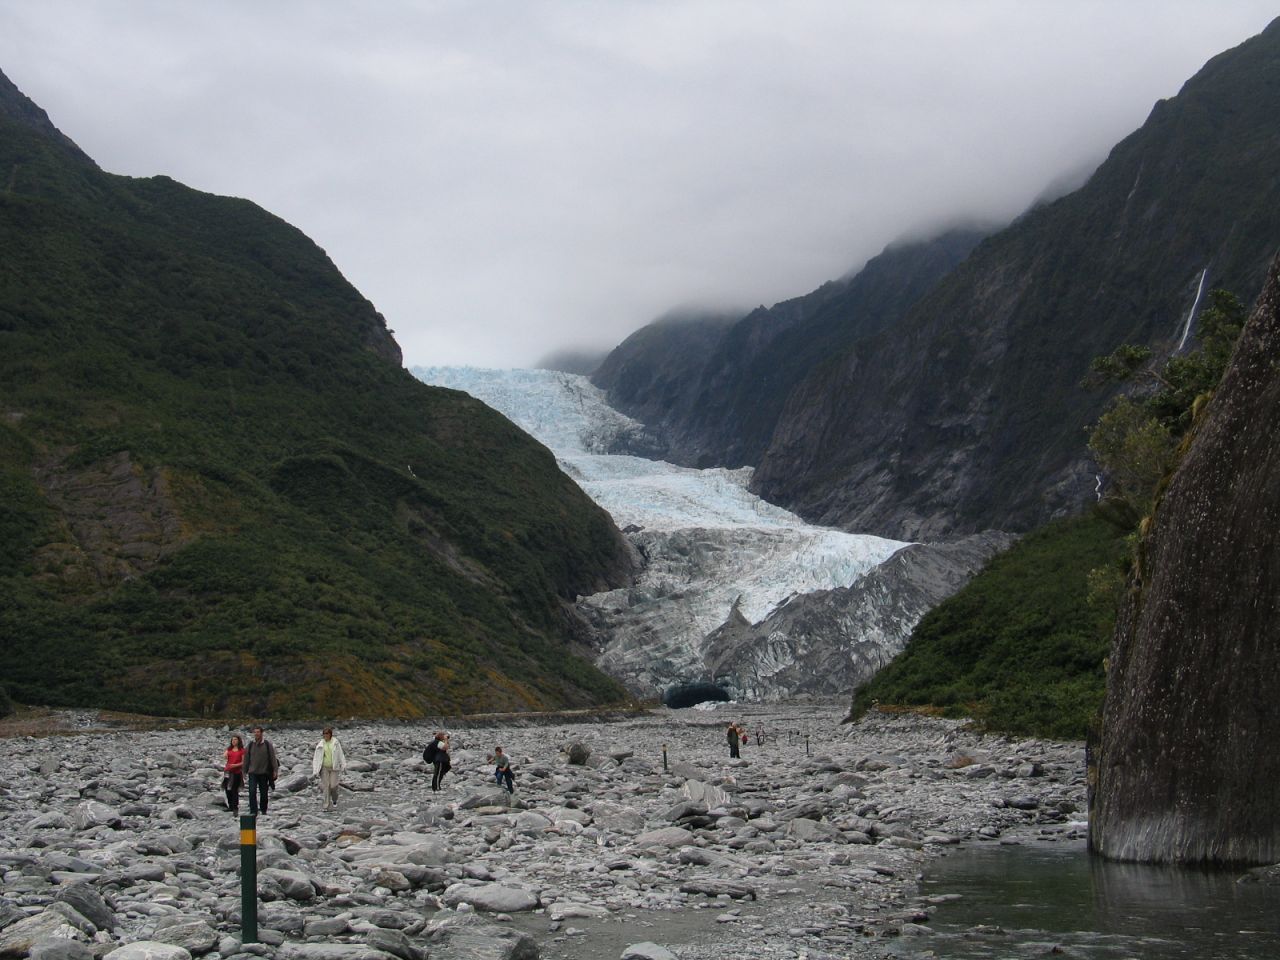 fotka / image Franz Josef Glacier, New Zealand